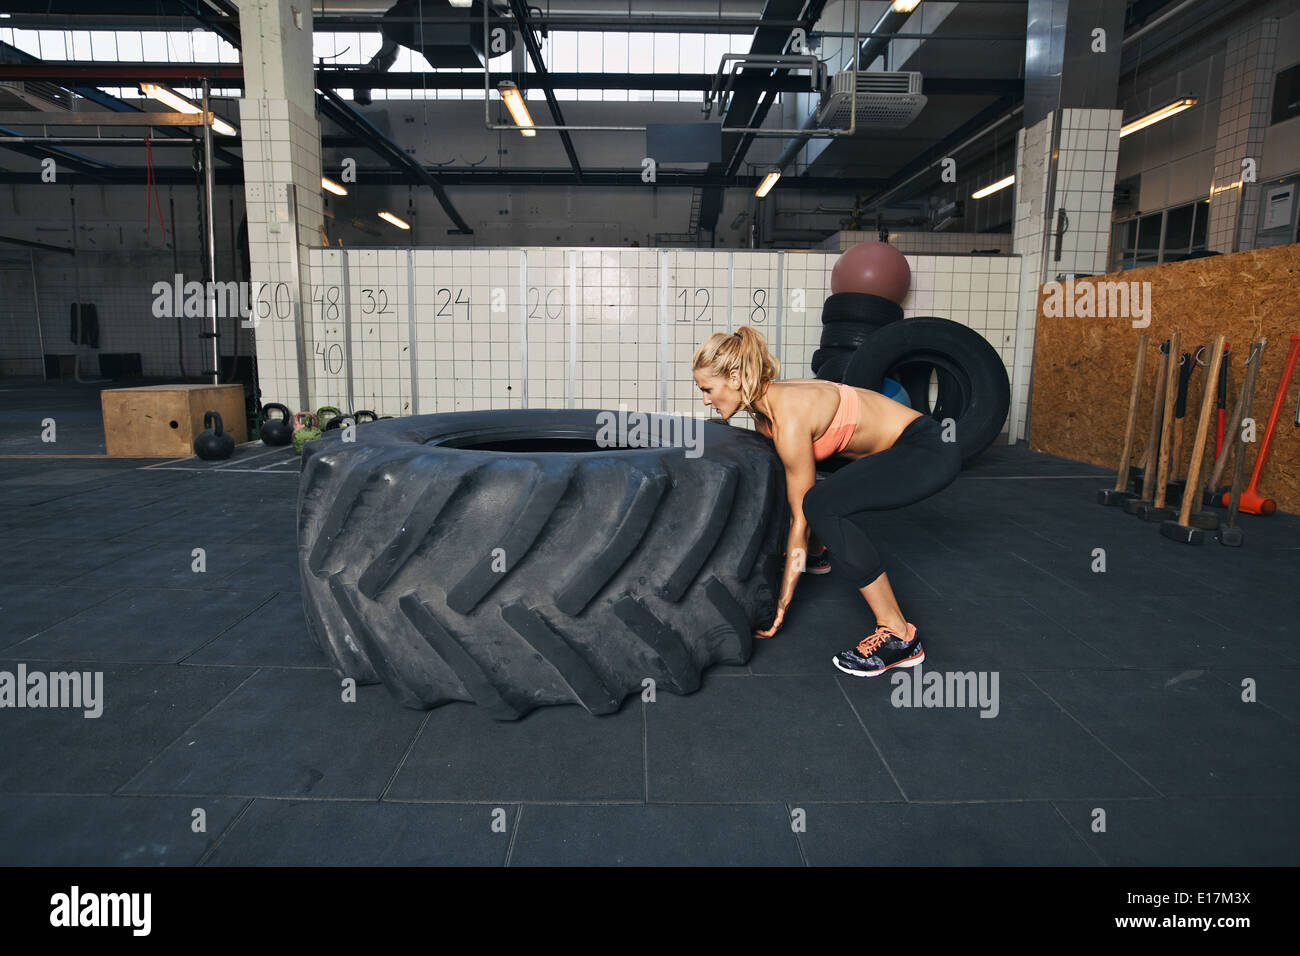 Harte Sportlerin spiegeln einen sehr großer Gummireifen. Junge Frau Crossfit Training im Fitness-Studio zu tun. Stockfoto